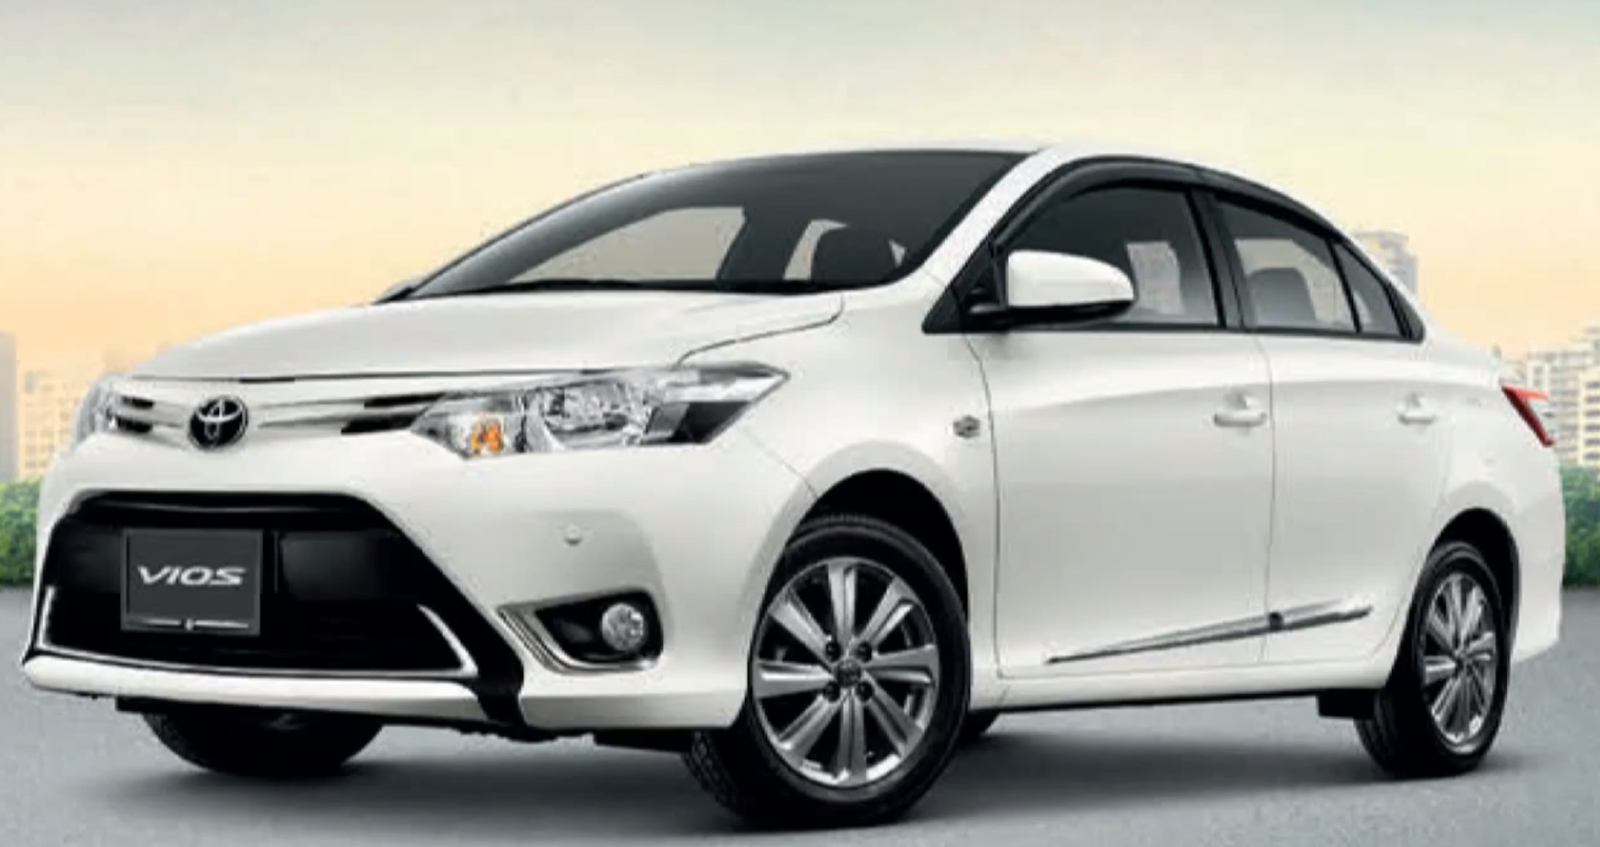 Daftar Harga Toyota Vios Terbaru 2015 Tembak KW 2015